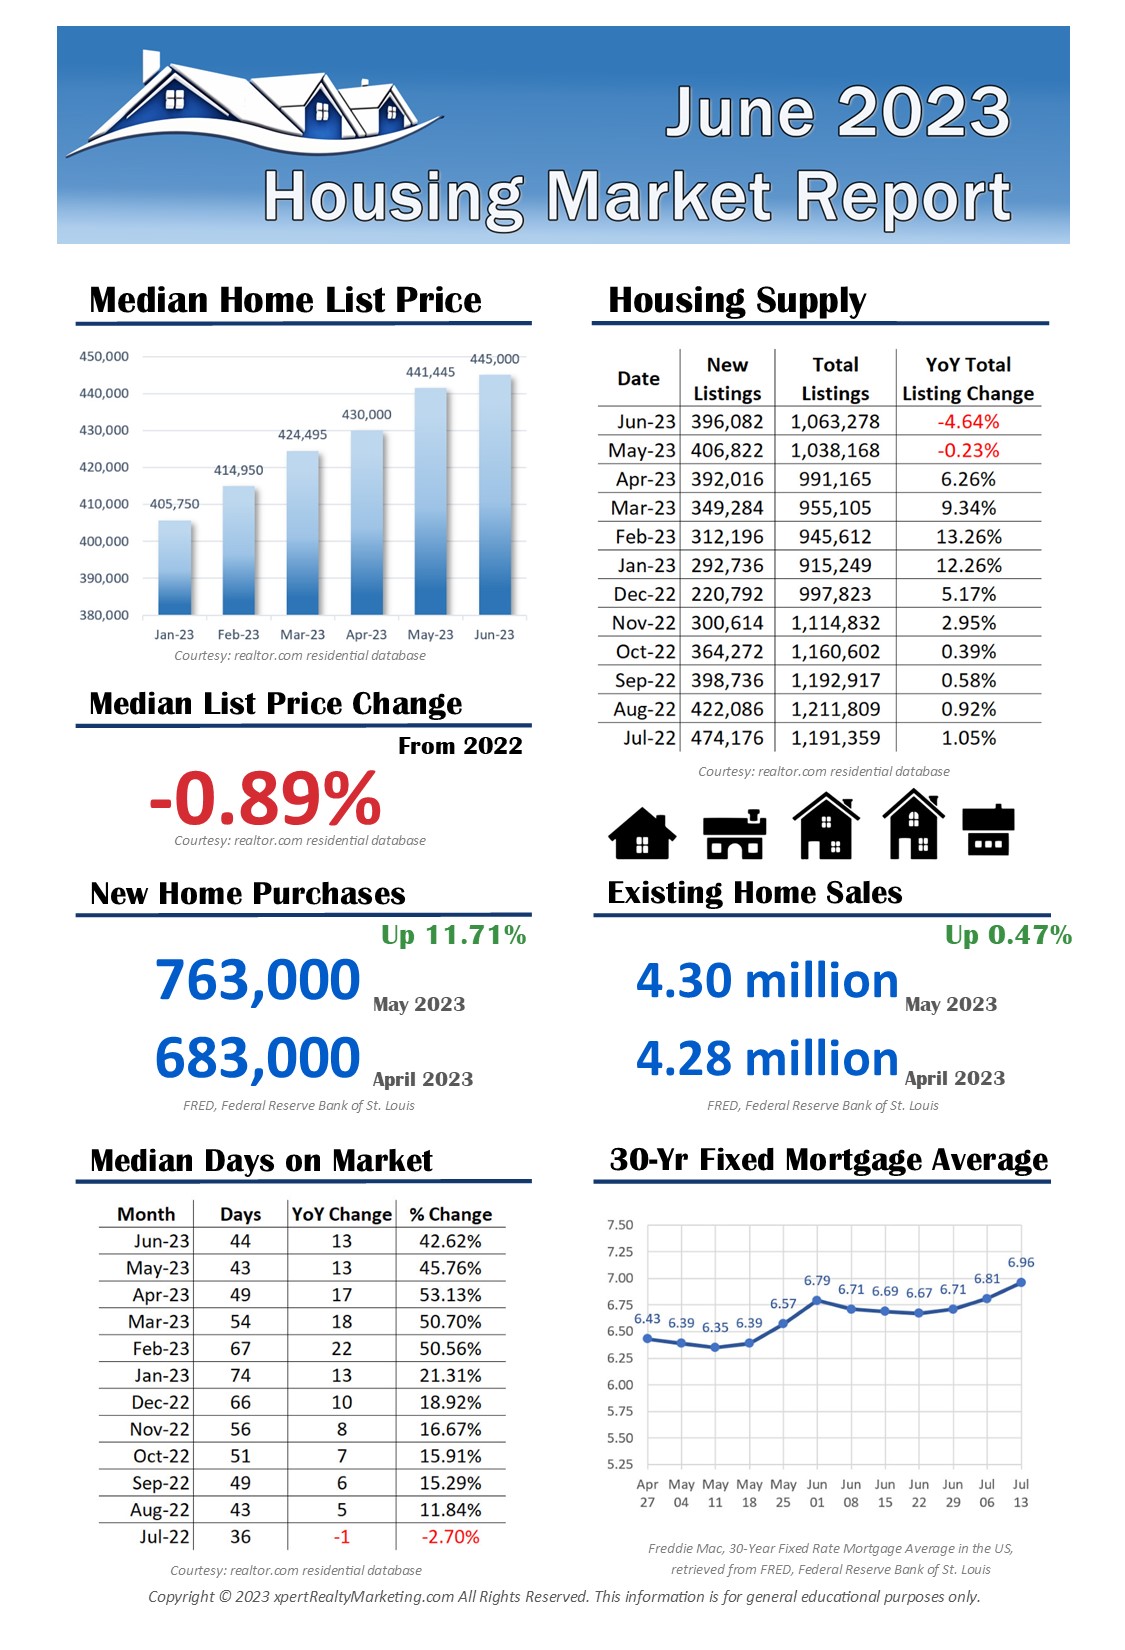 June 2023 U.S. Housing Market Report Infographic